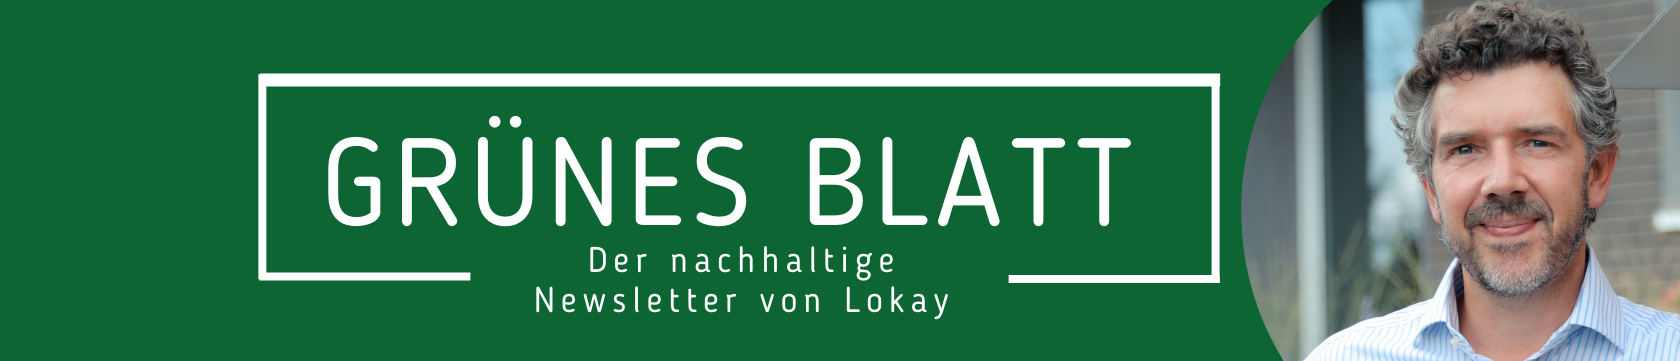 Grünes Blatt - Der nachhaltige Newsletter von Lokay 